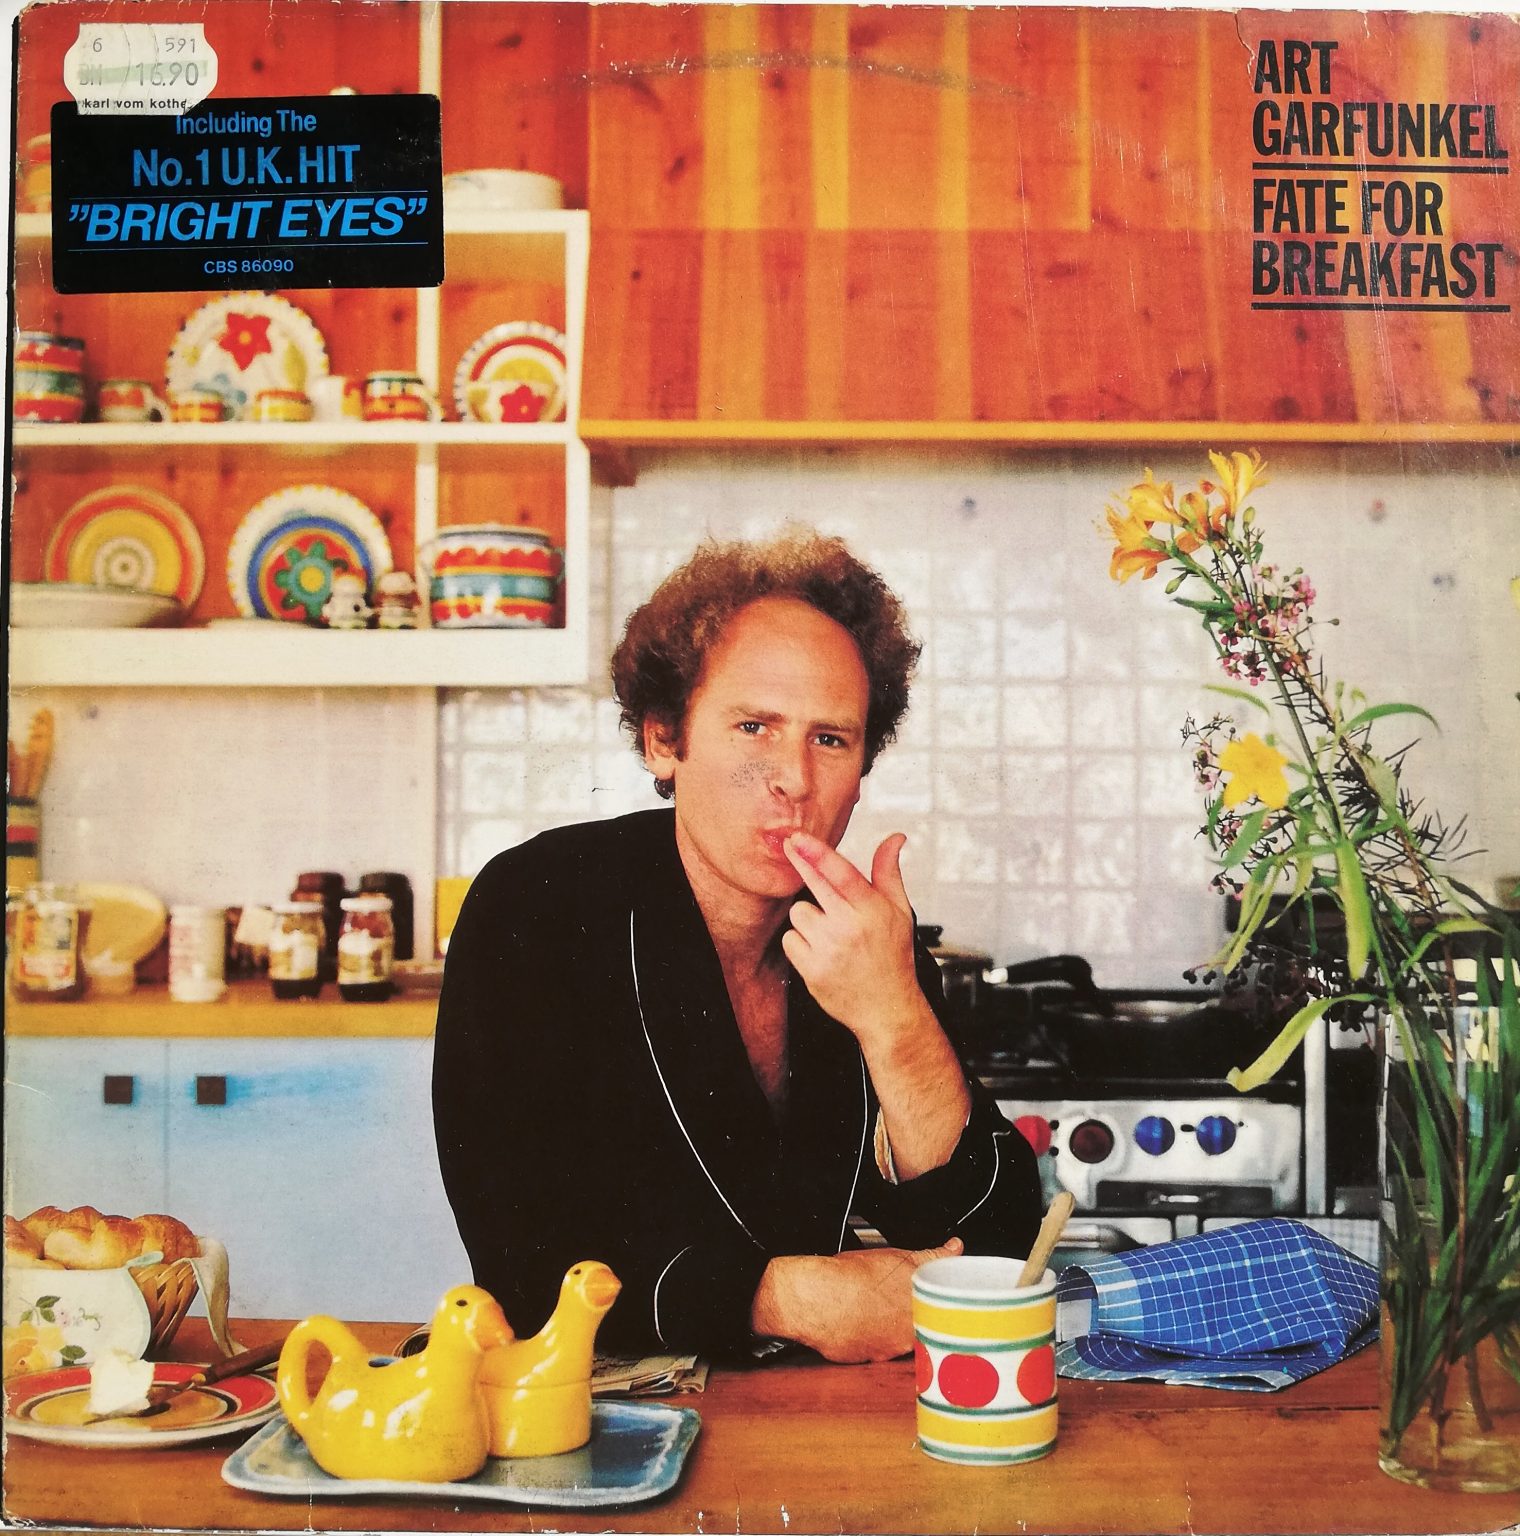 Art Garfunkel – Fate for Breakfast